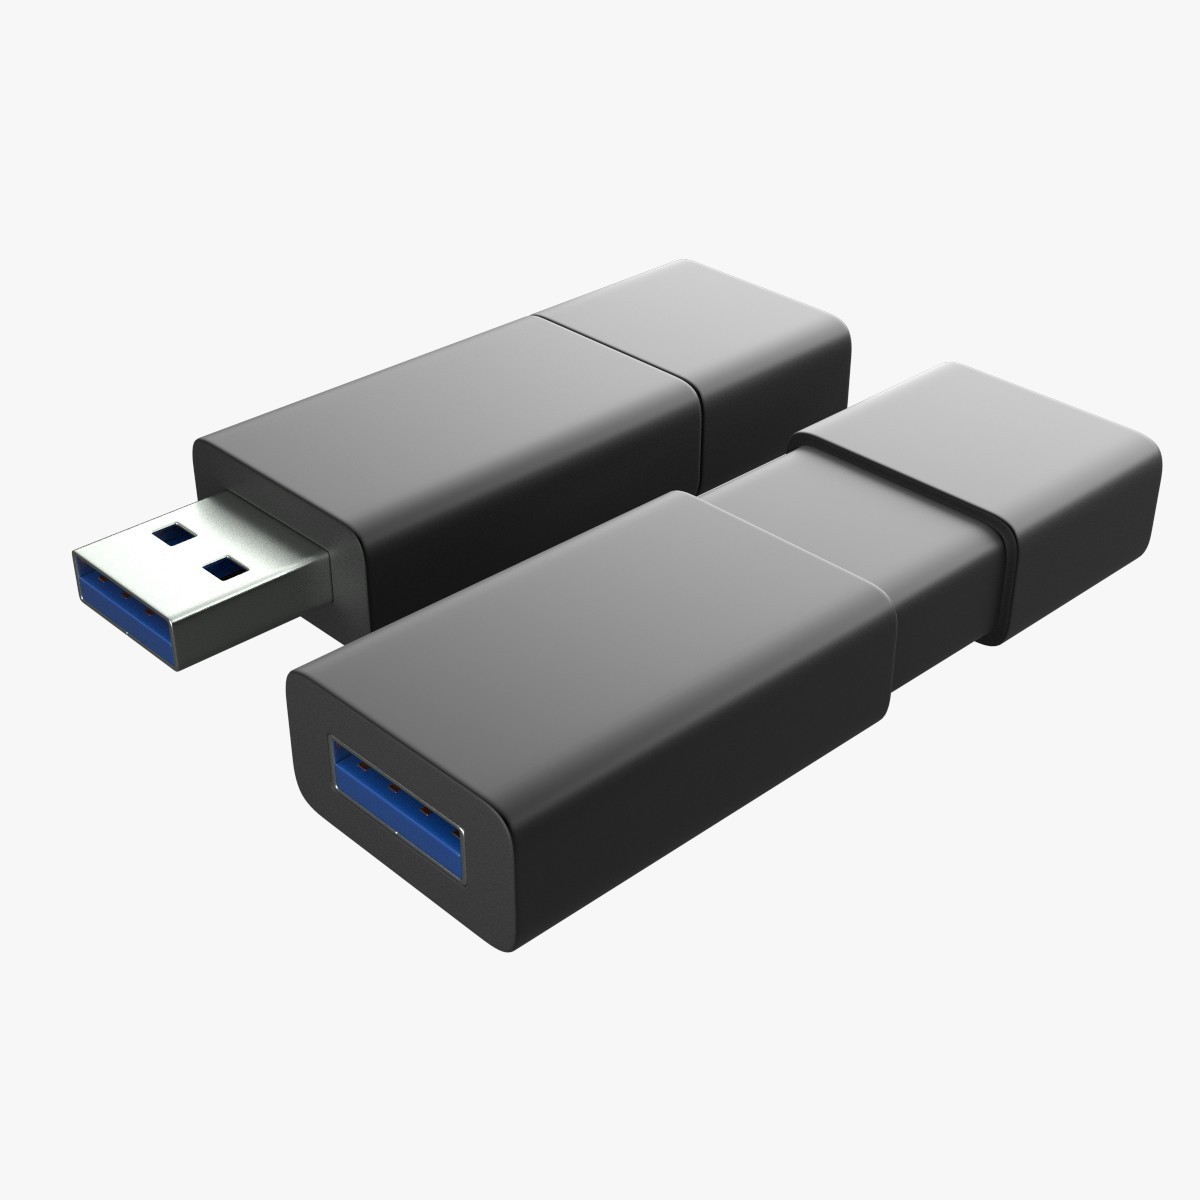 Флешка usb c usb 3.0. USB 3.0 флешка Гбит. USB 3.0 флешка монолит металл. USB Flash Drive 3d element. USB 3.2 флешка Гбит.